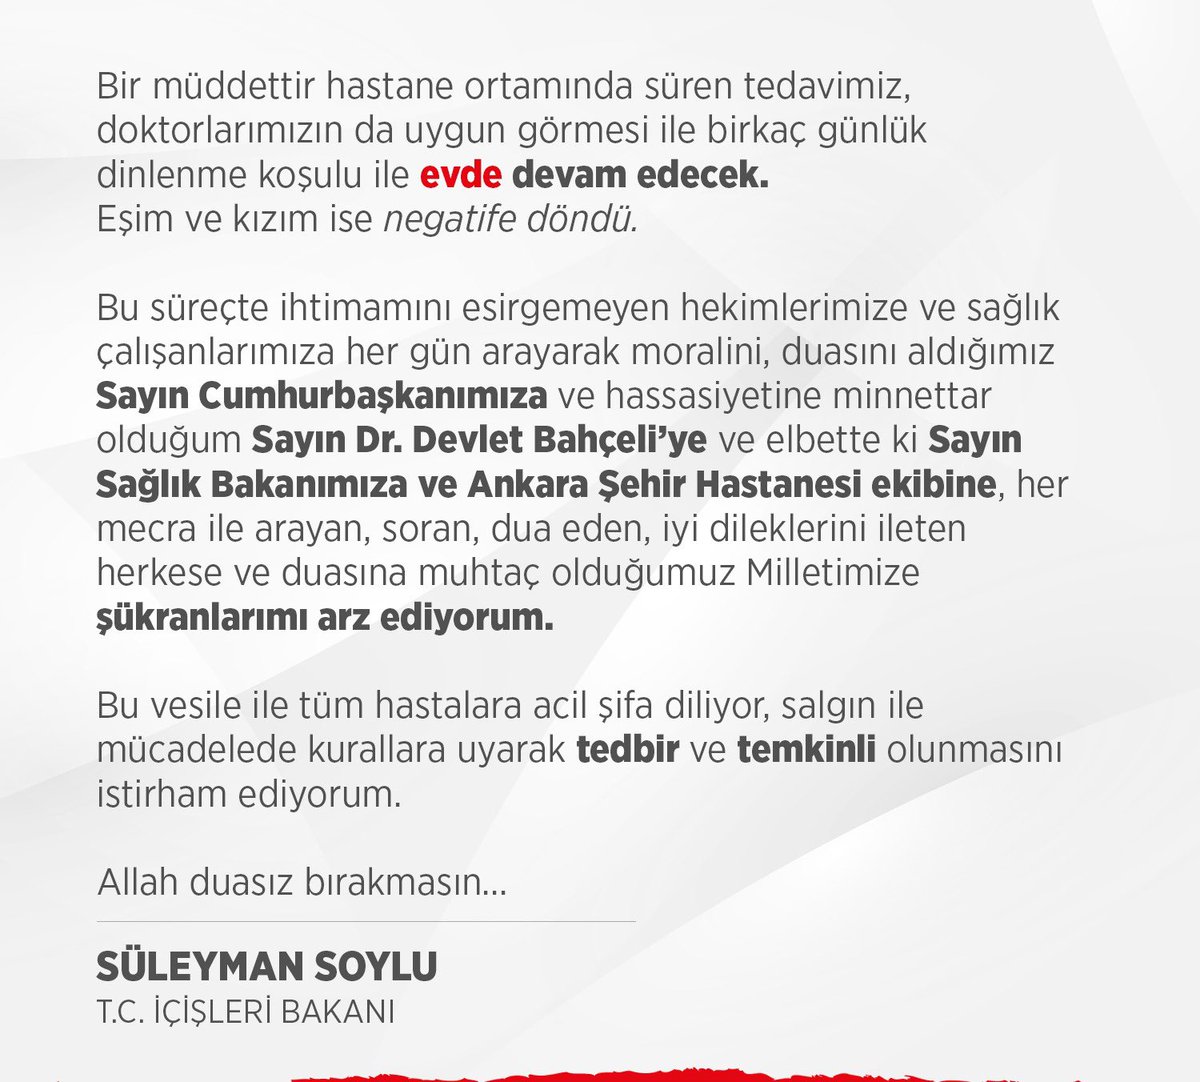 Süleyman Soylu (@suleymansoylu) on Twitter photo 2020-11-05 15:27:16